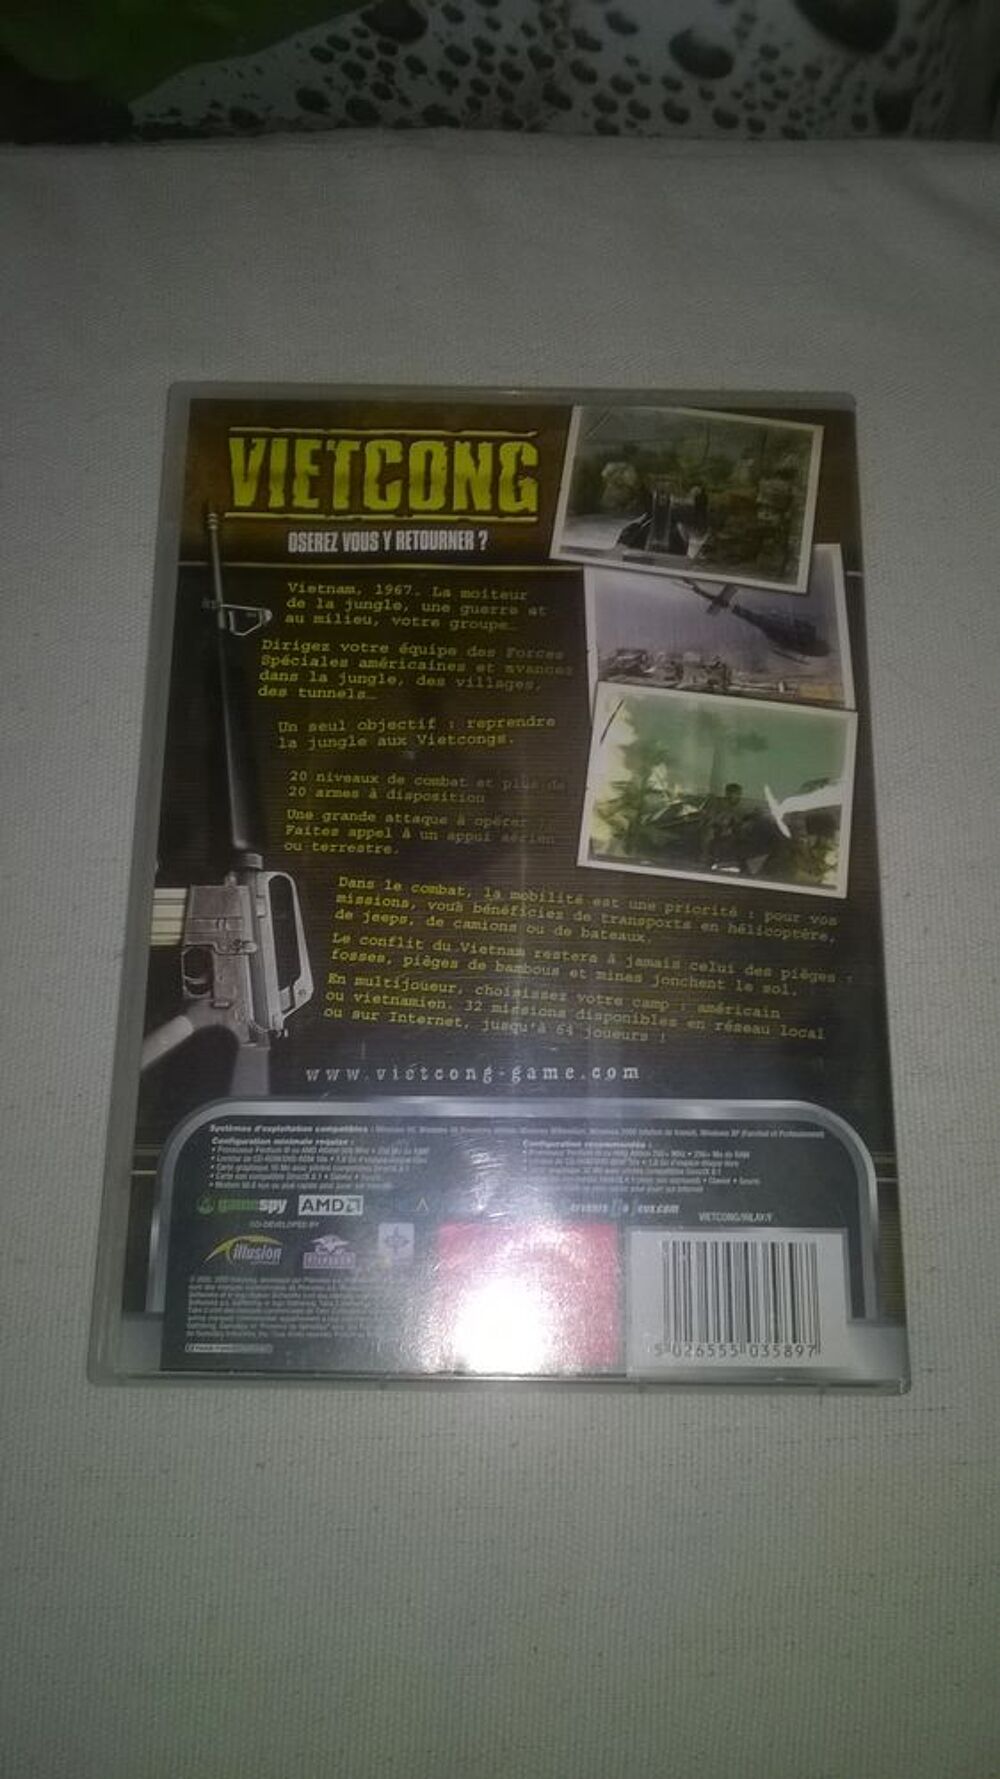 Jeux PC Vietcong 
2003
Excellent etat
Double cd
Vietcong Consoles et jeux vidos